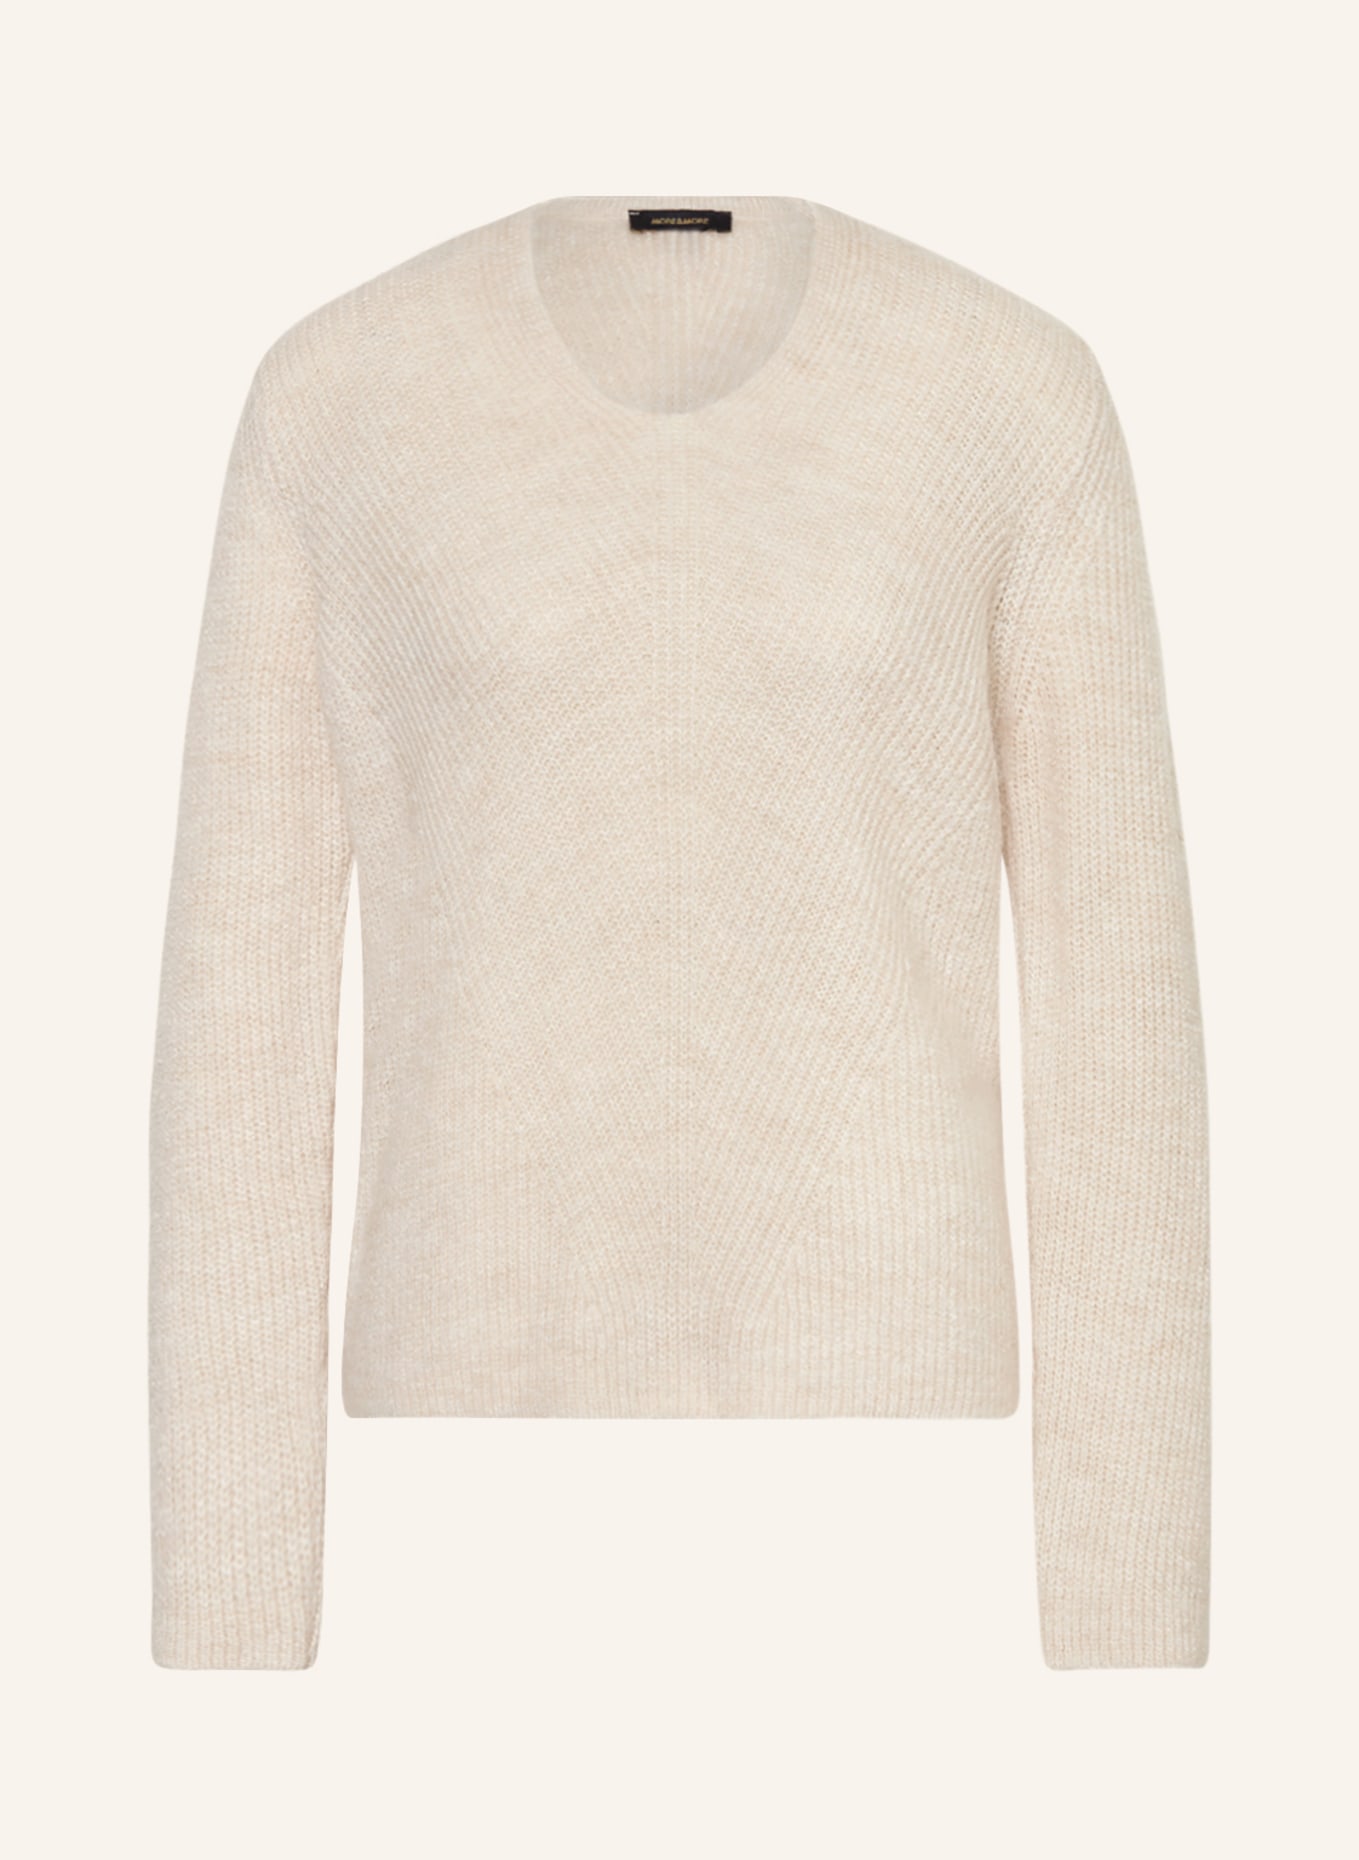 MORE & MORE Sweater, Color: ECRU (Image 1)